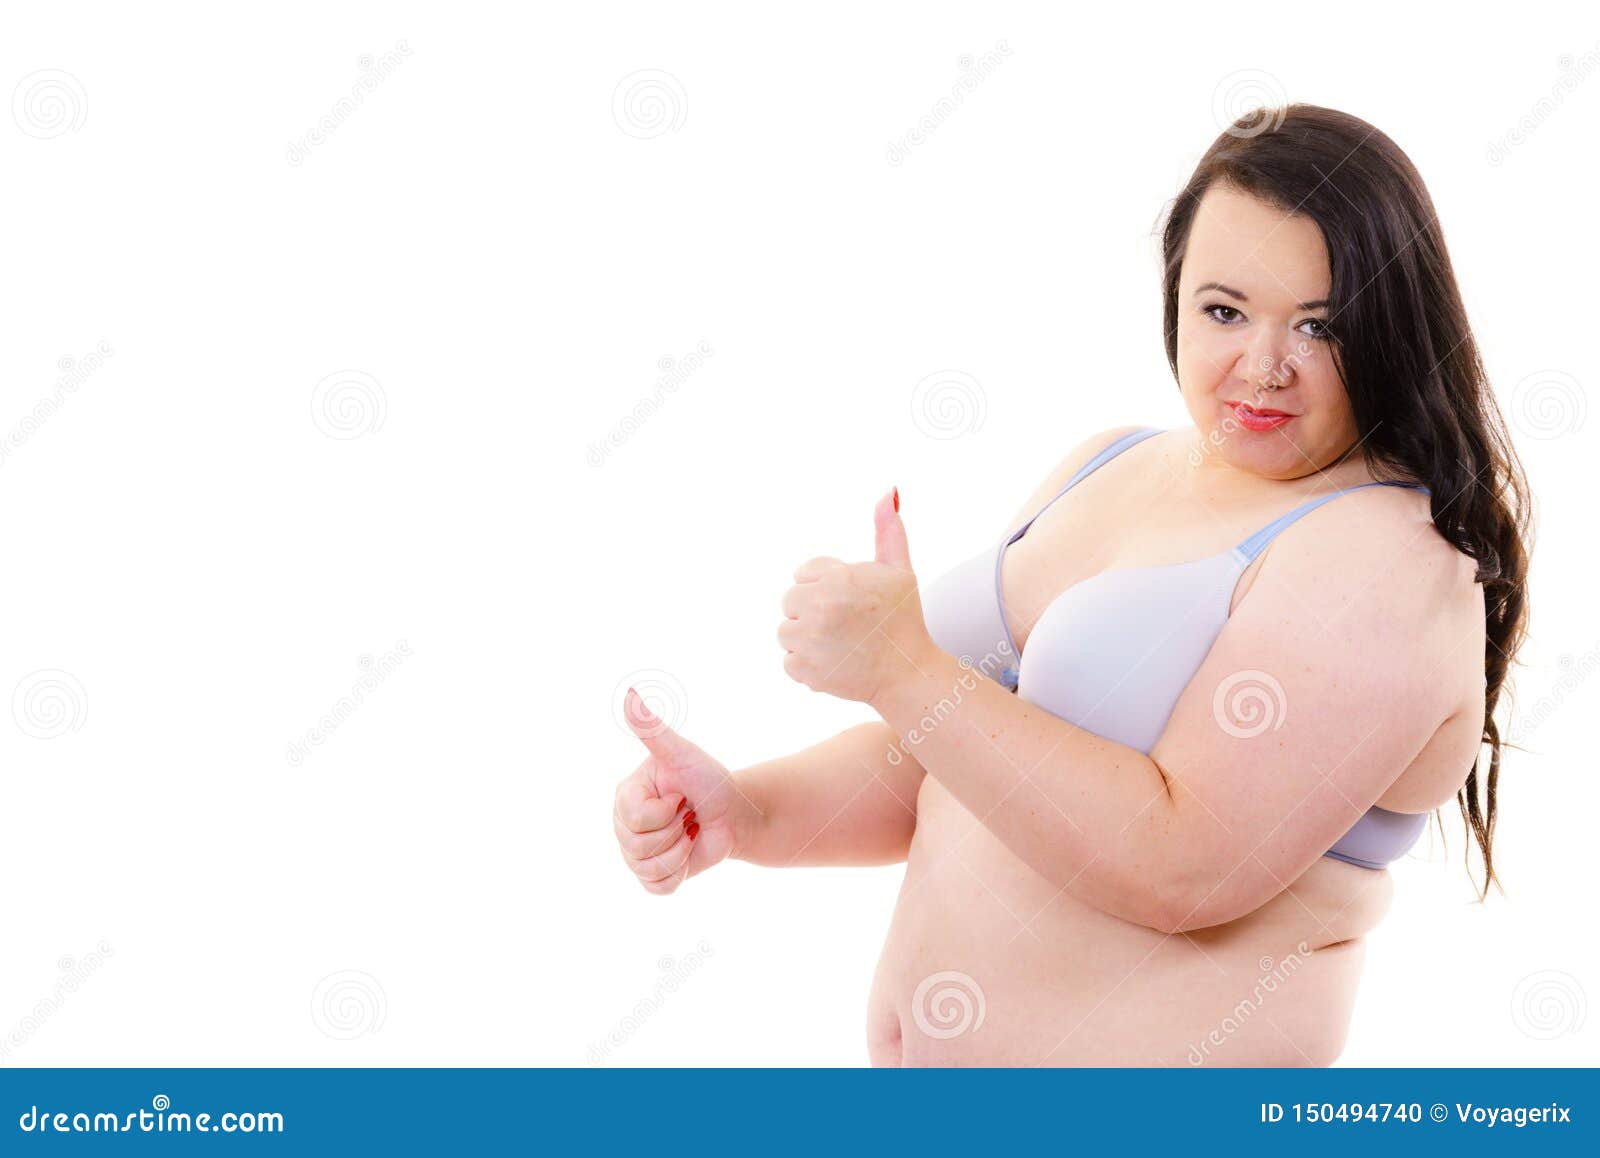 Big fat mature woman free photos